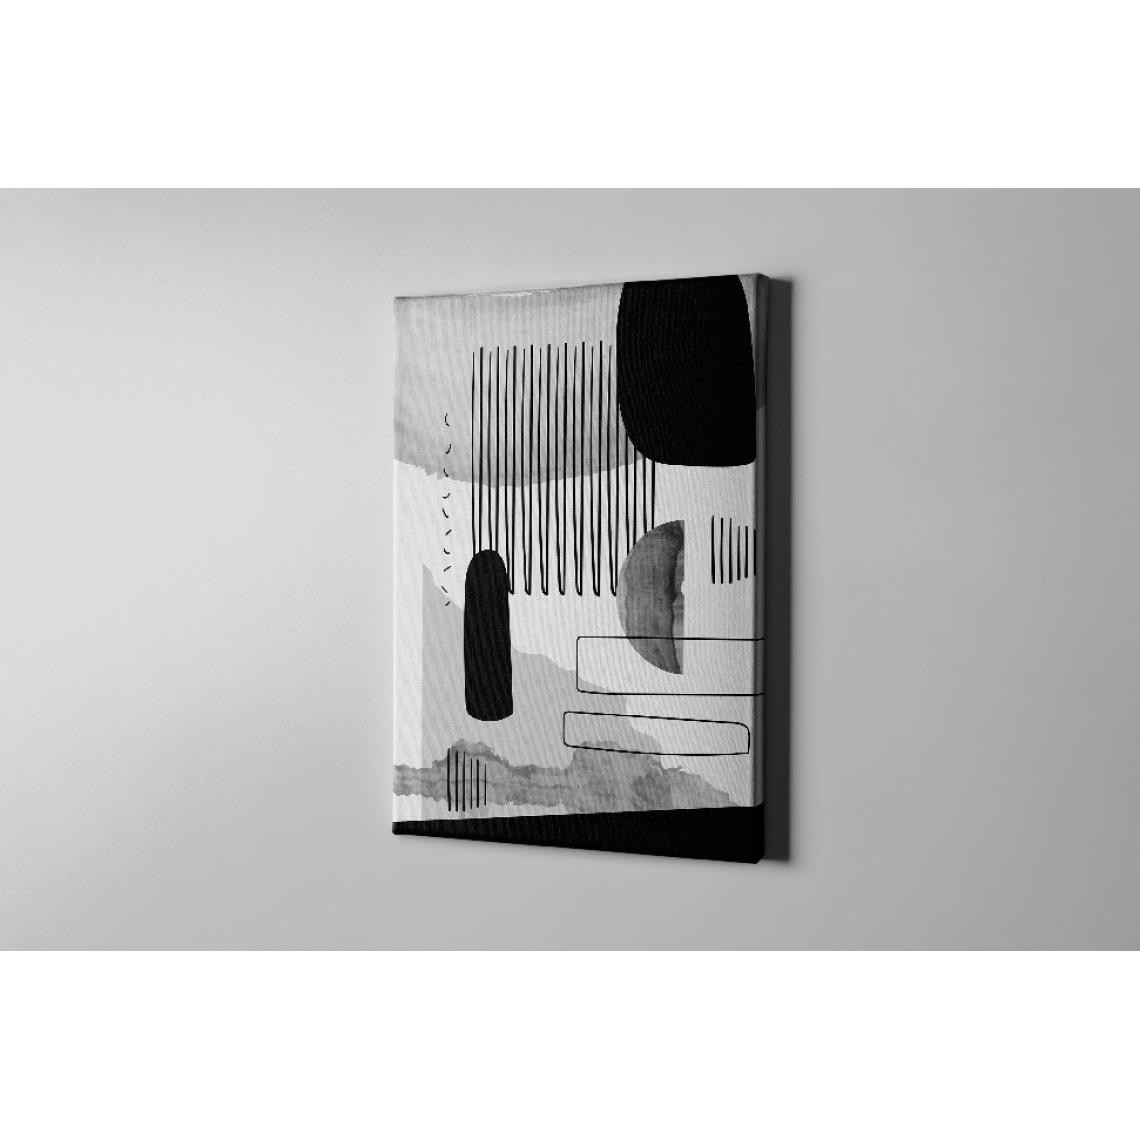 Homemania - HOMEMANIA Tableau sur toile Formes - Blanc, noir, gris - 100 x 3 x 150 cm - Tableaux, peintures